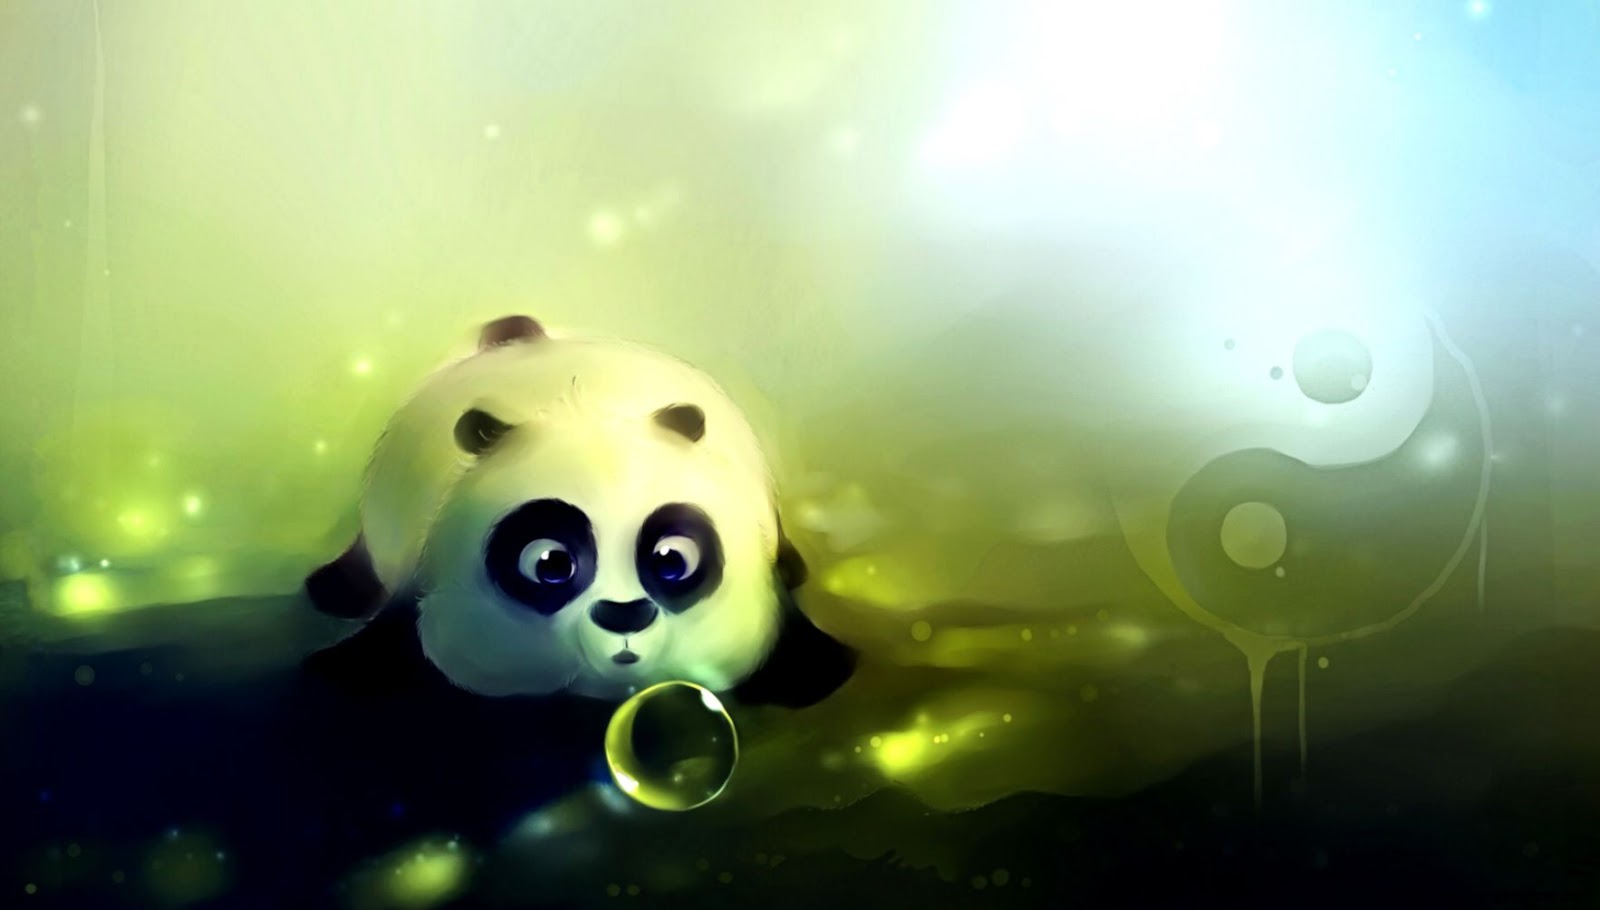 fond d'écran anime panda,panda,vert,ciel,ours,macro photographie